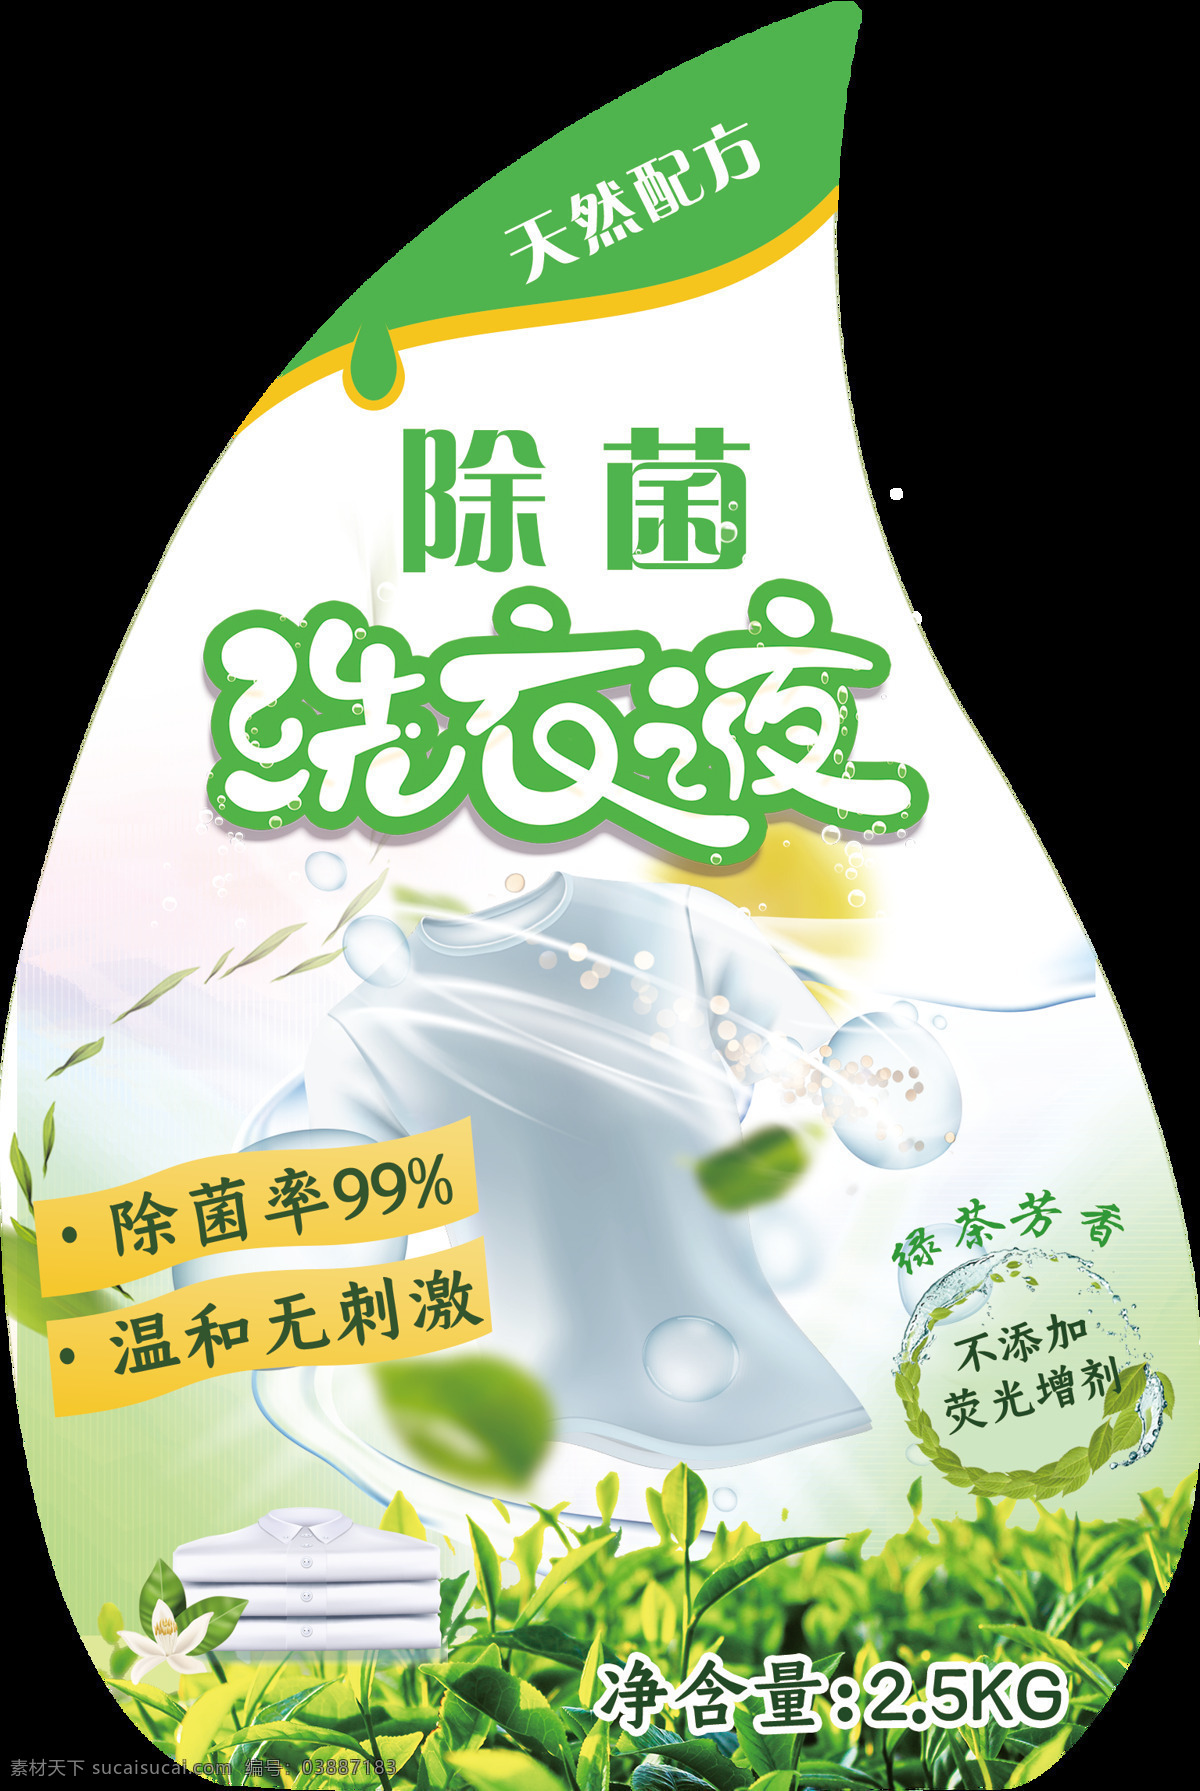 洗衣液包装图 洗液标签 不干胶 包装设计 除菌洗衣液 绿茶芳香